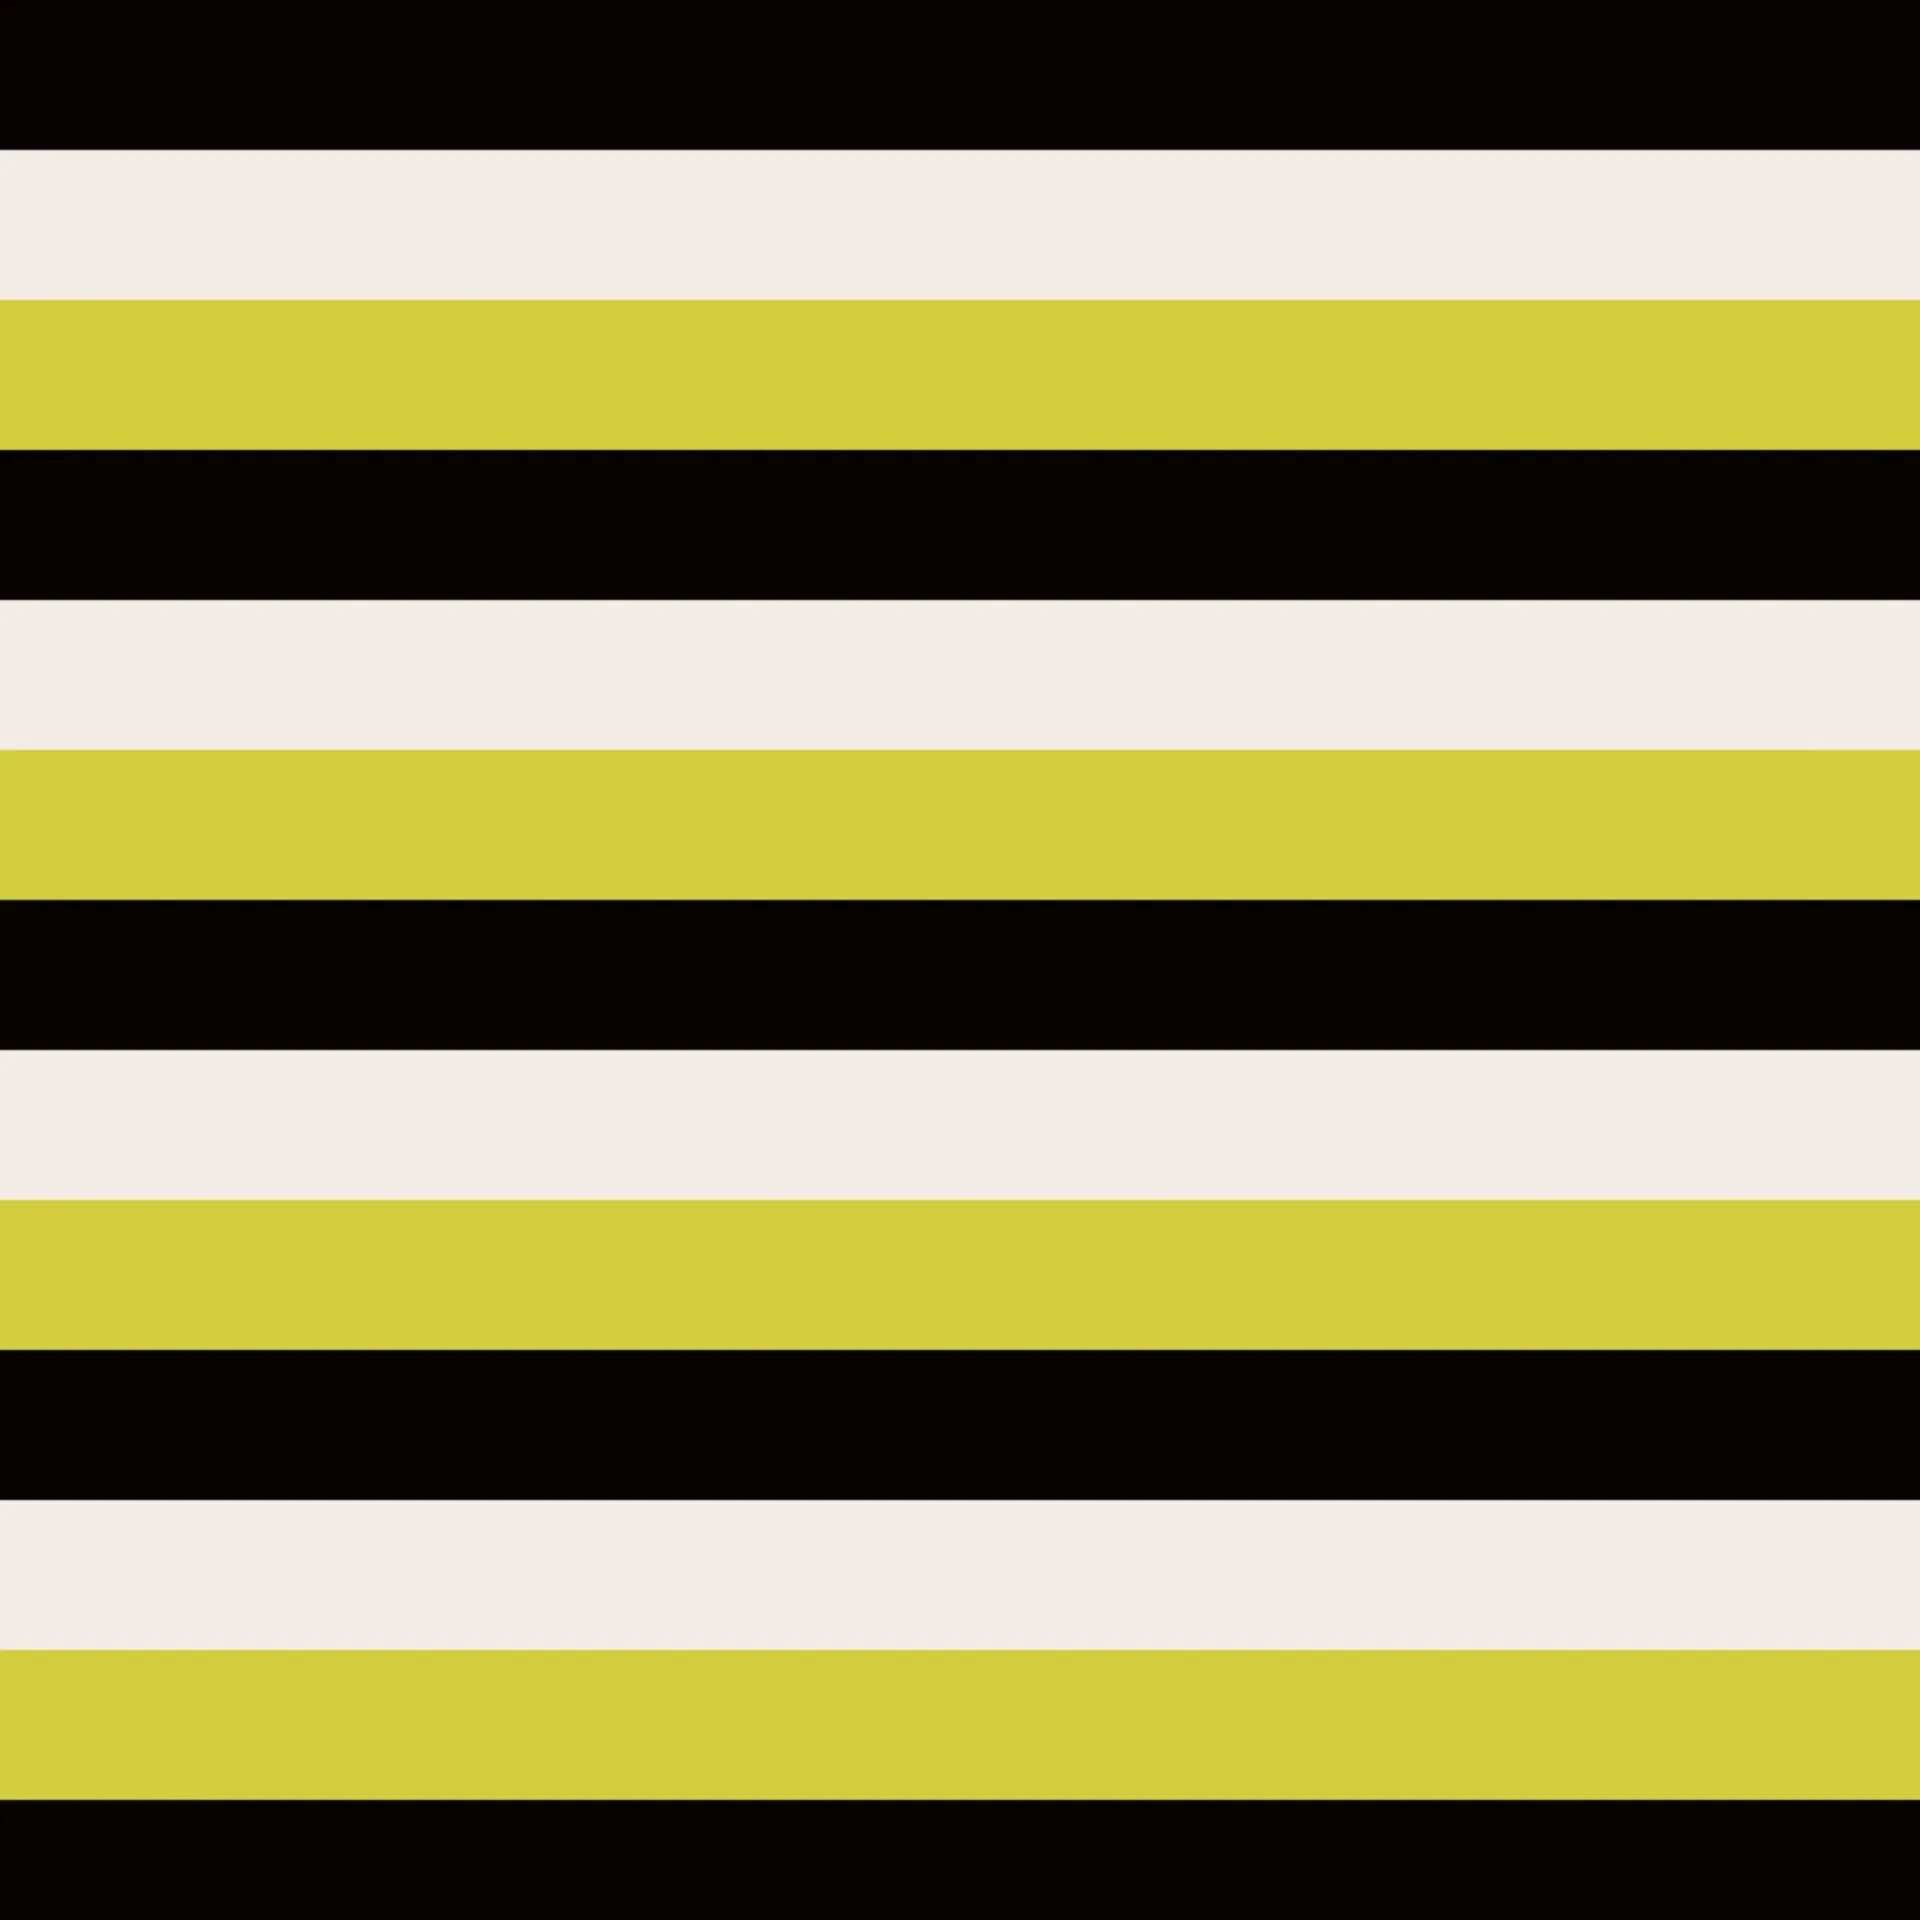 Вертикальные желтые полосы. Горизонтальные полоски. Желтая горизонтальная полоска. Чёрножёлтые полоски горизонтальные. Чёрно белые полоски.